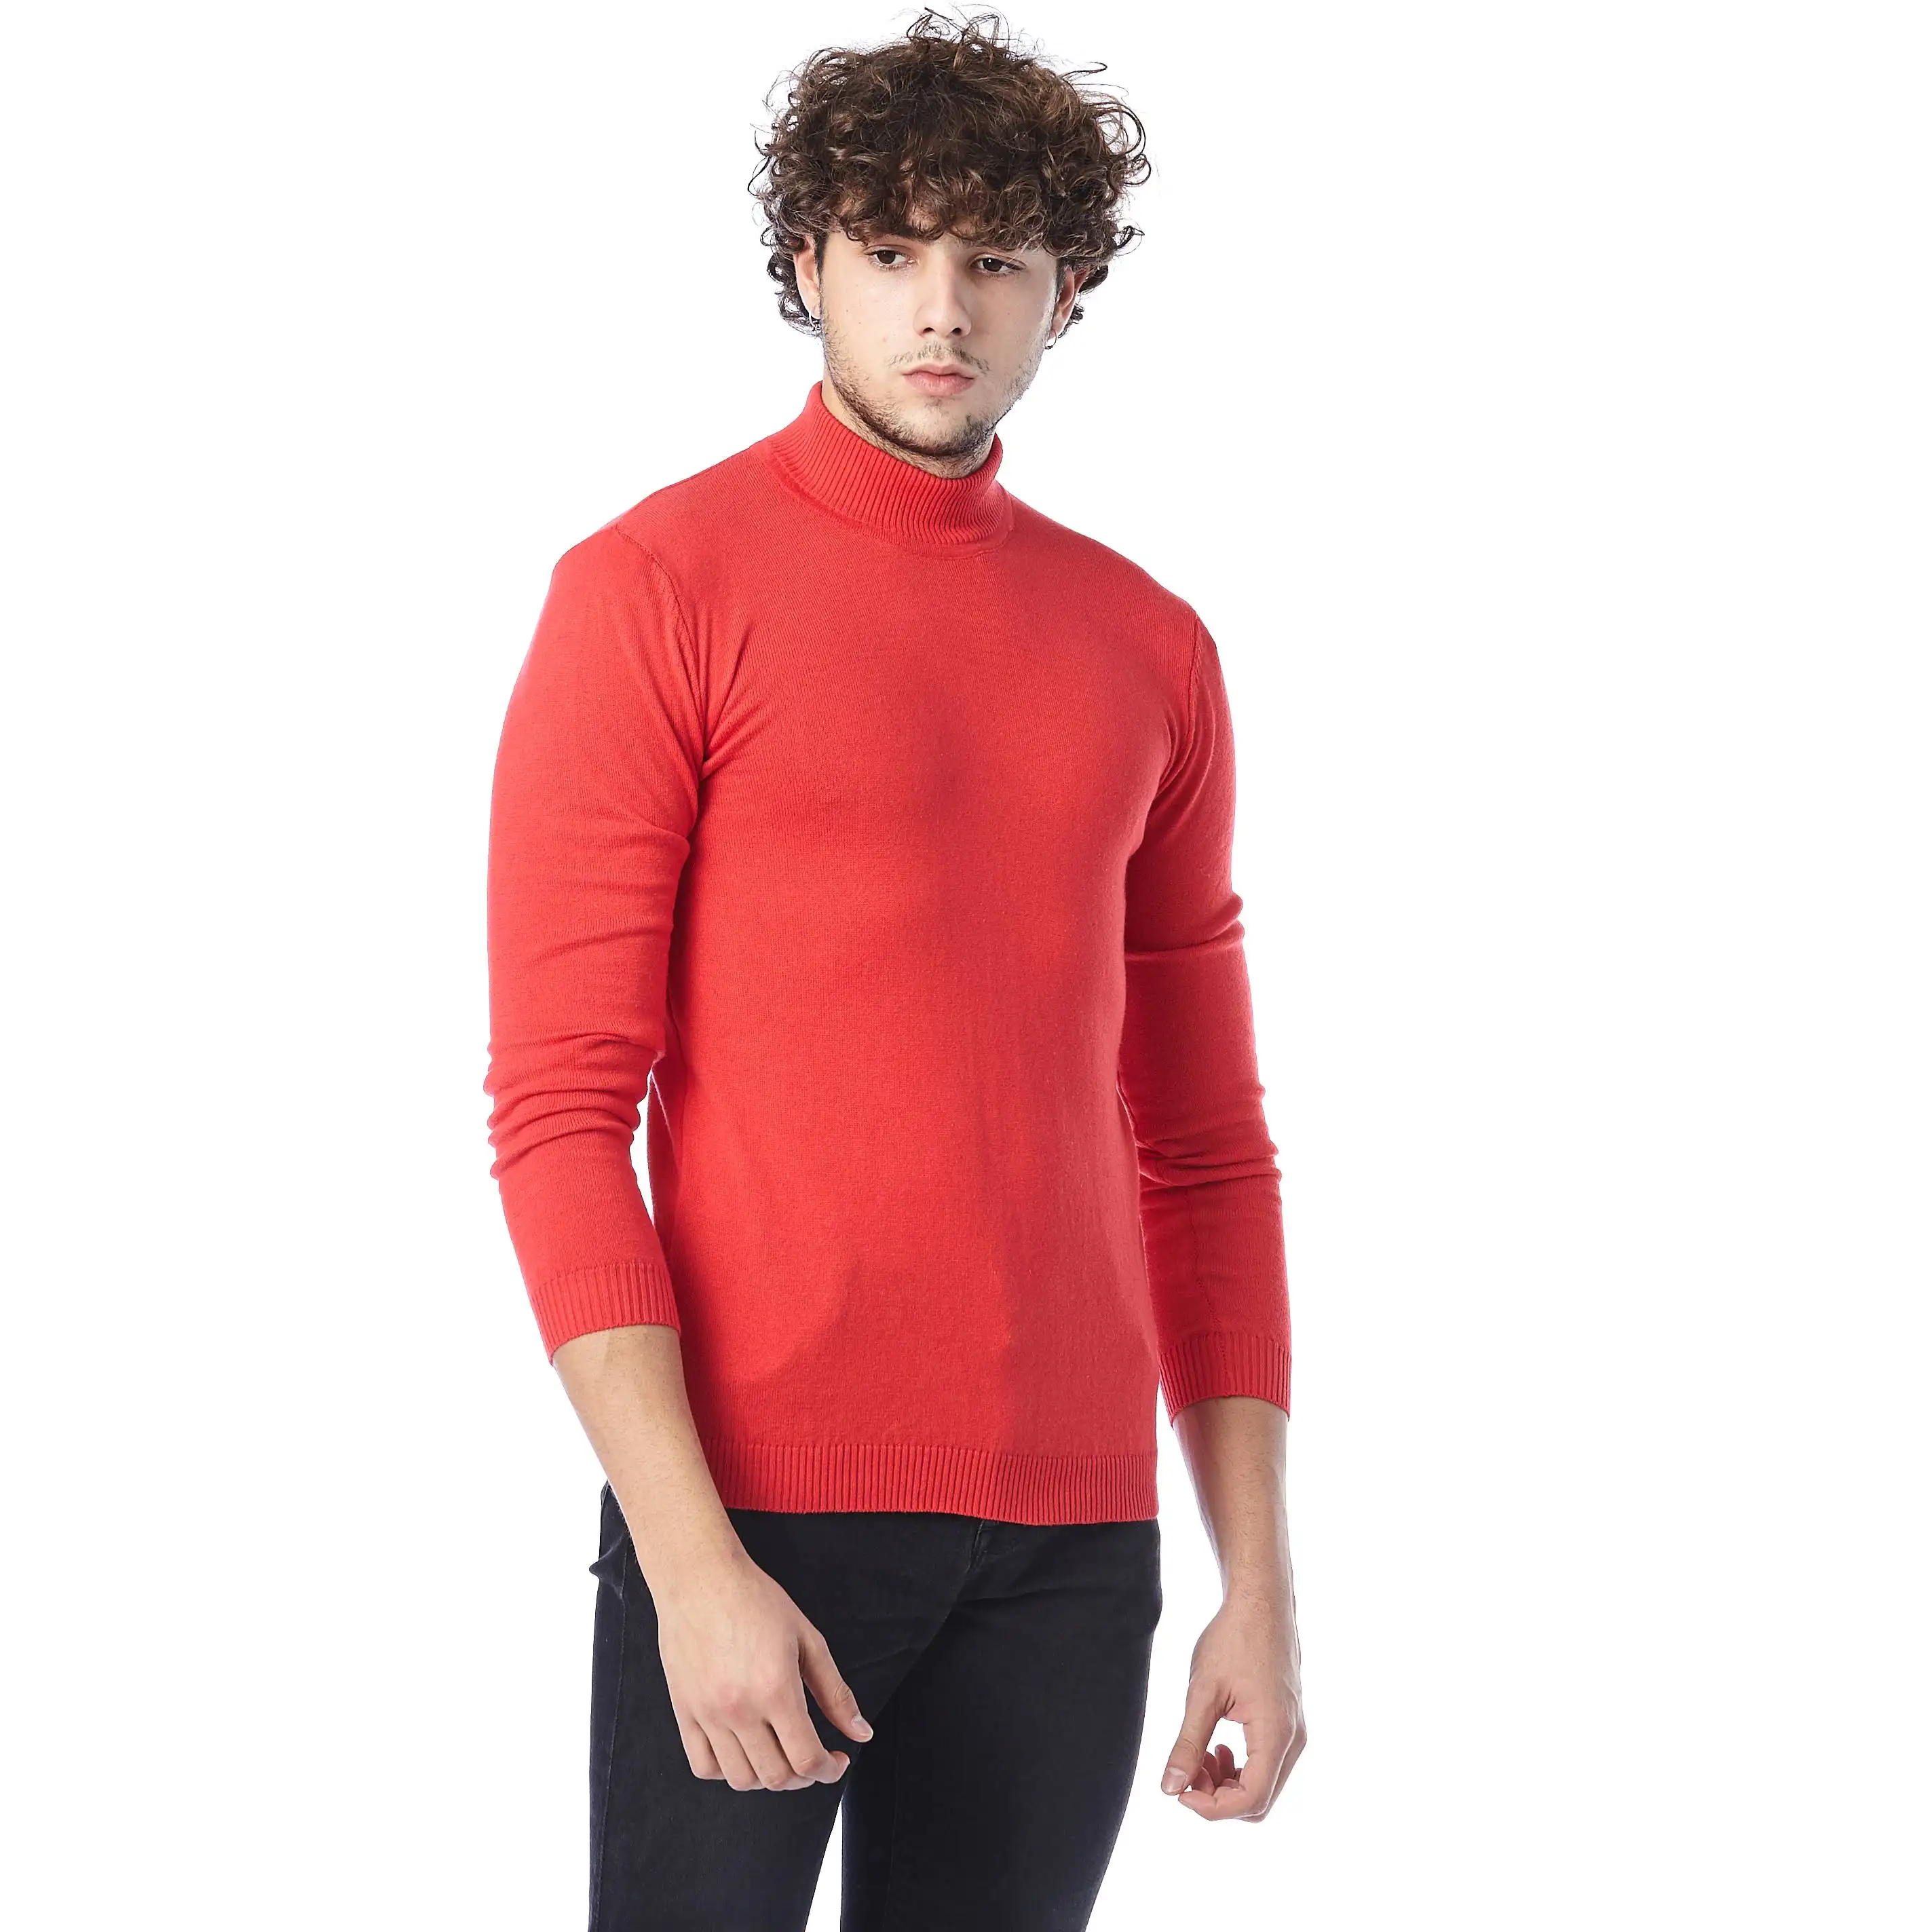 Neueste Mode Großhandel gute Qualität direkt vom Hersteller Langarm Winter Classic Knitted Men Sweaters